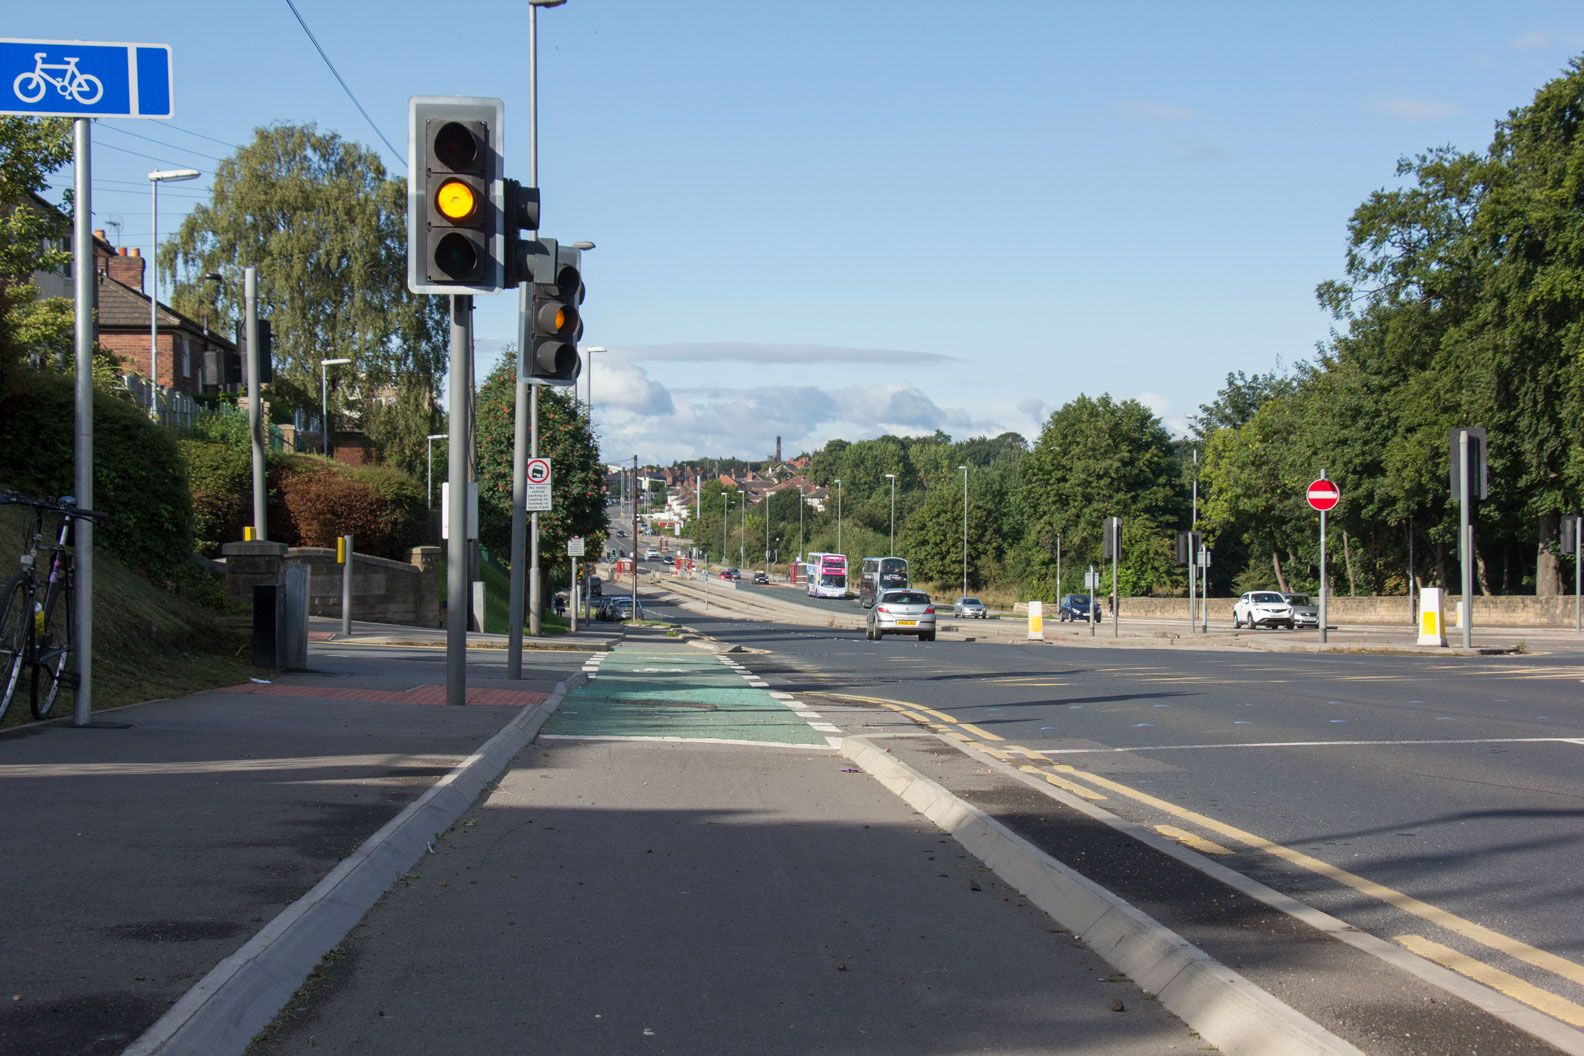 Leeds Bradford cycle superhighway